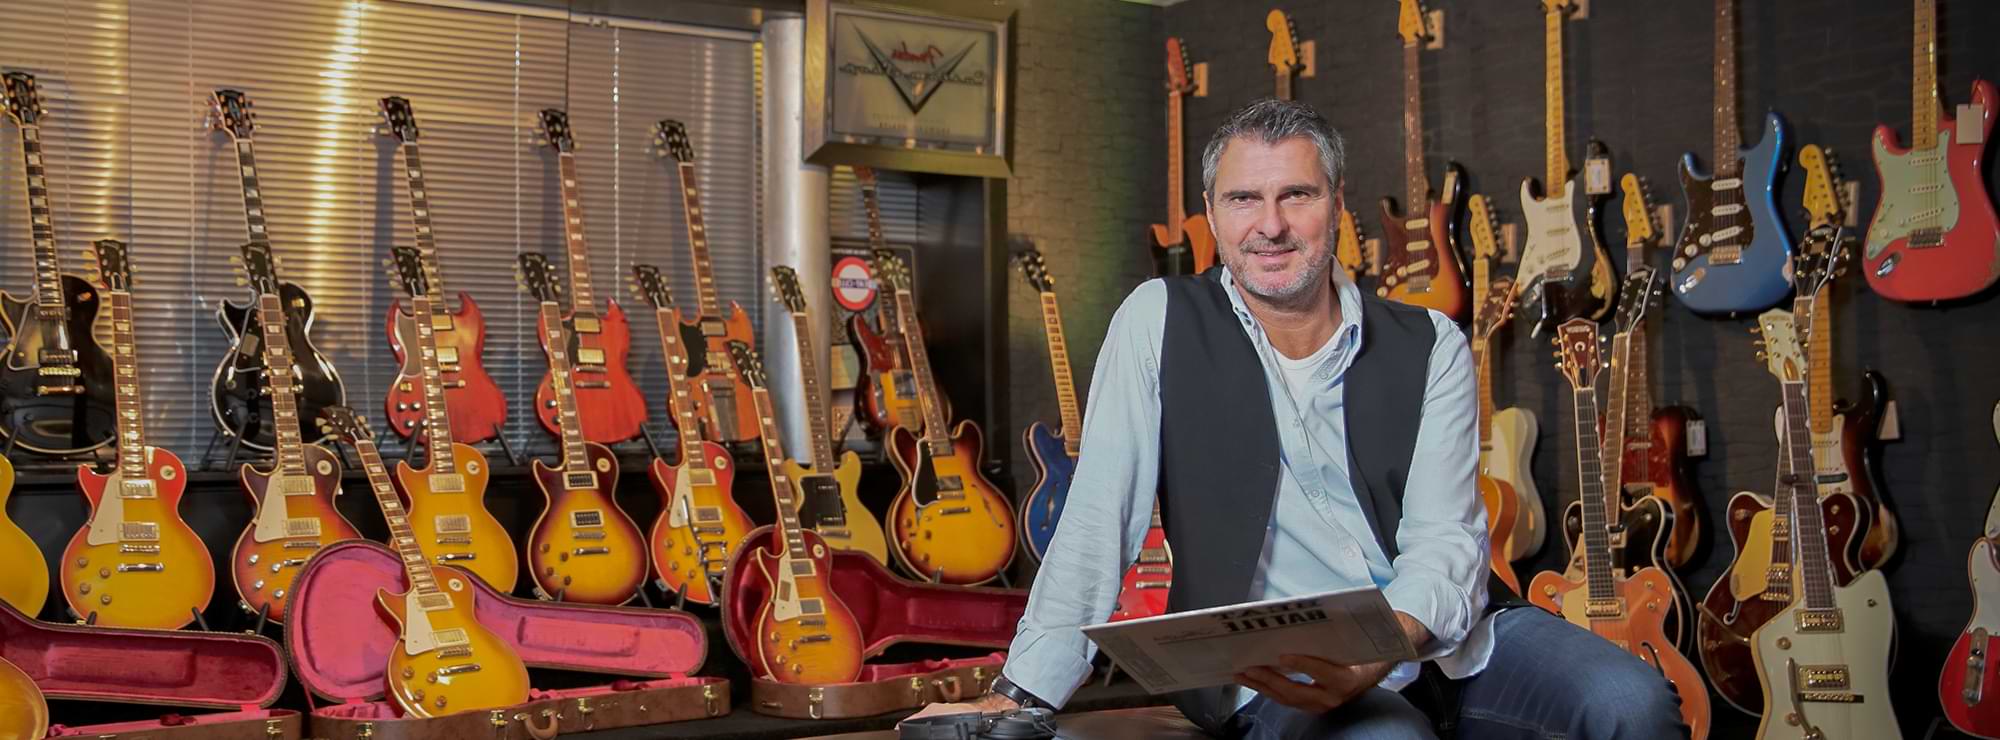 Uli Roth in einem Raum mit über 20 E-Gitarren, hält eine Schallplatte in der Hand